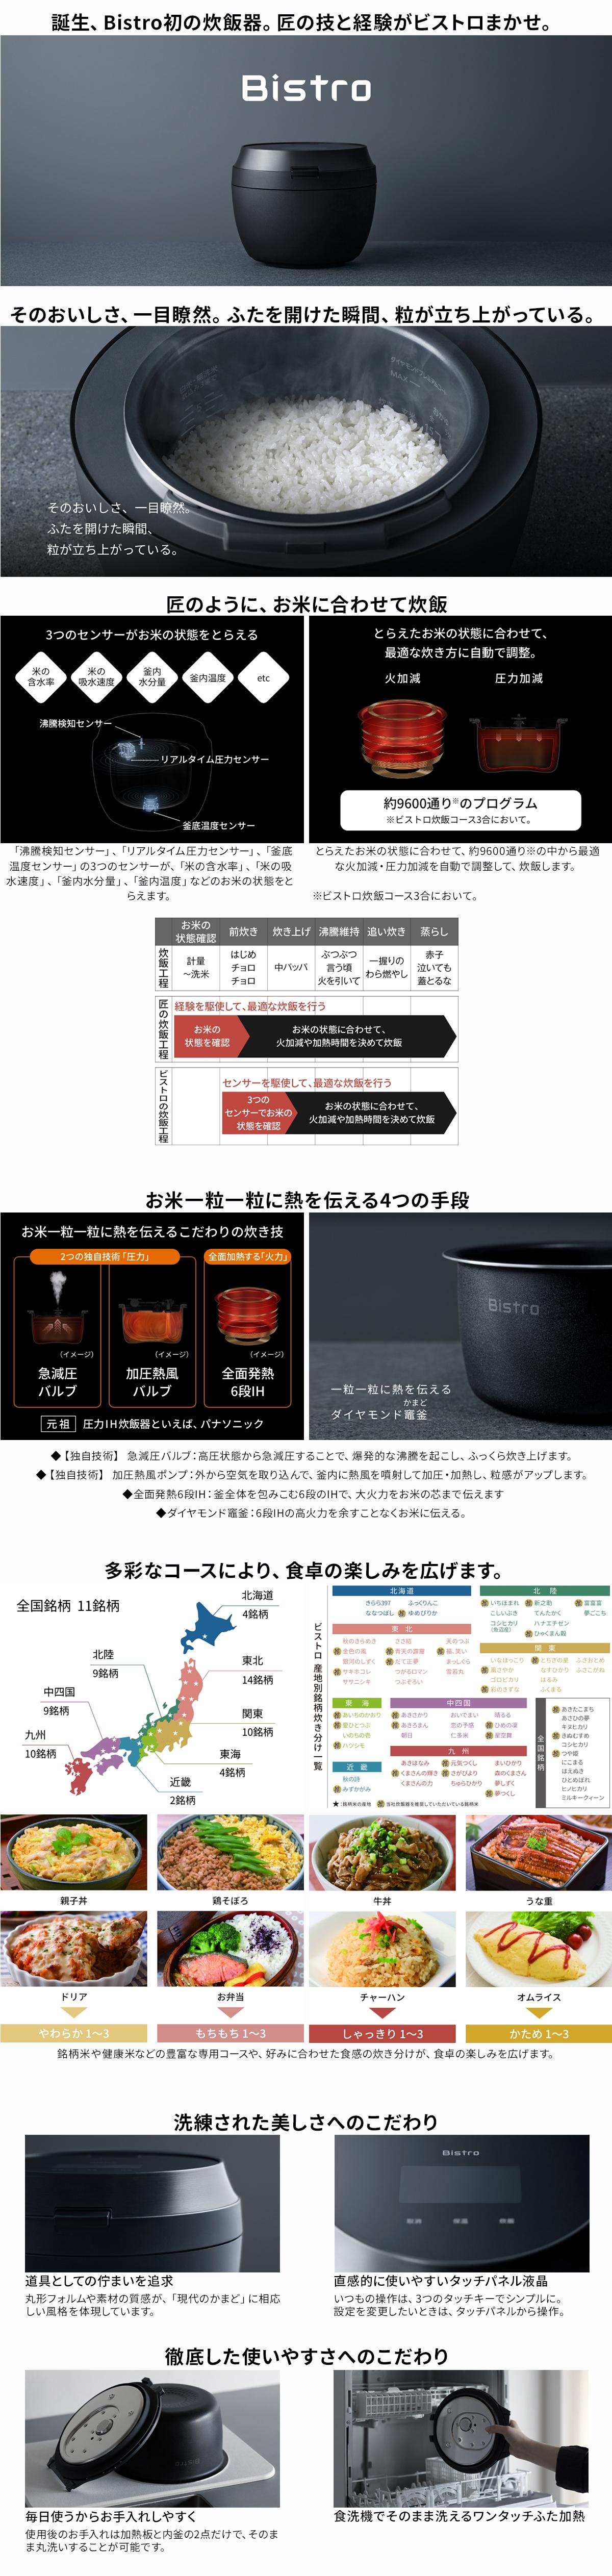 【期間限定ギフトプレゼント】パナソニック SR-V10BA-K 可変圧力IHジャー炊飯器 Bistro 5.5合 ブラック